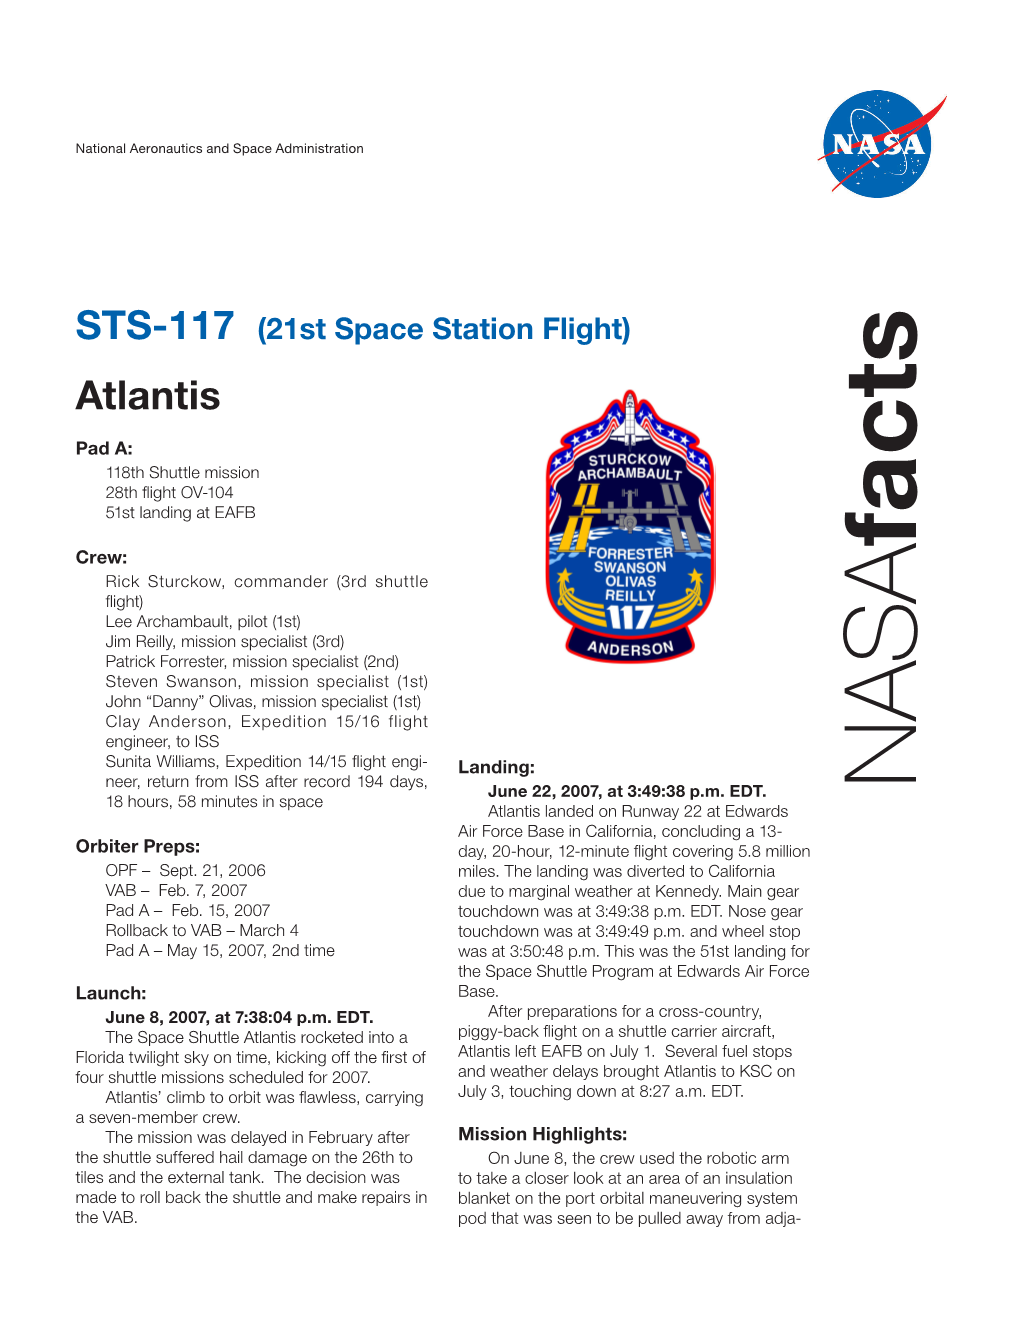 STS-117 NASA Facts